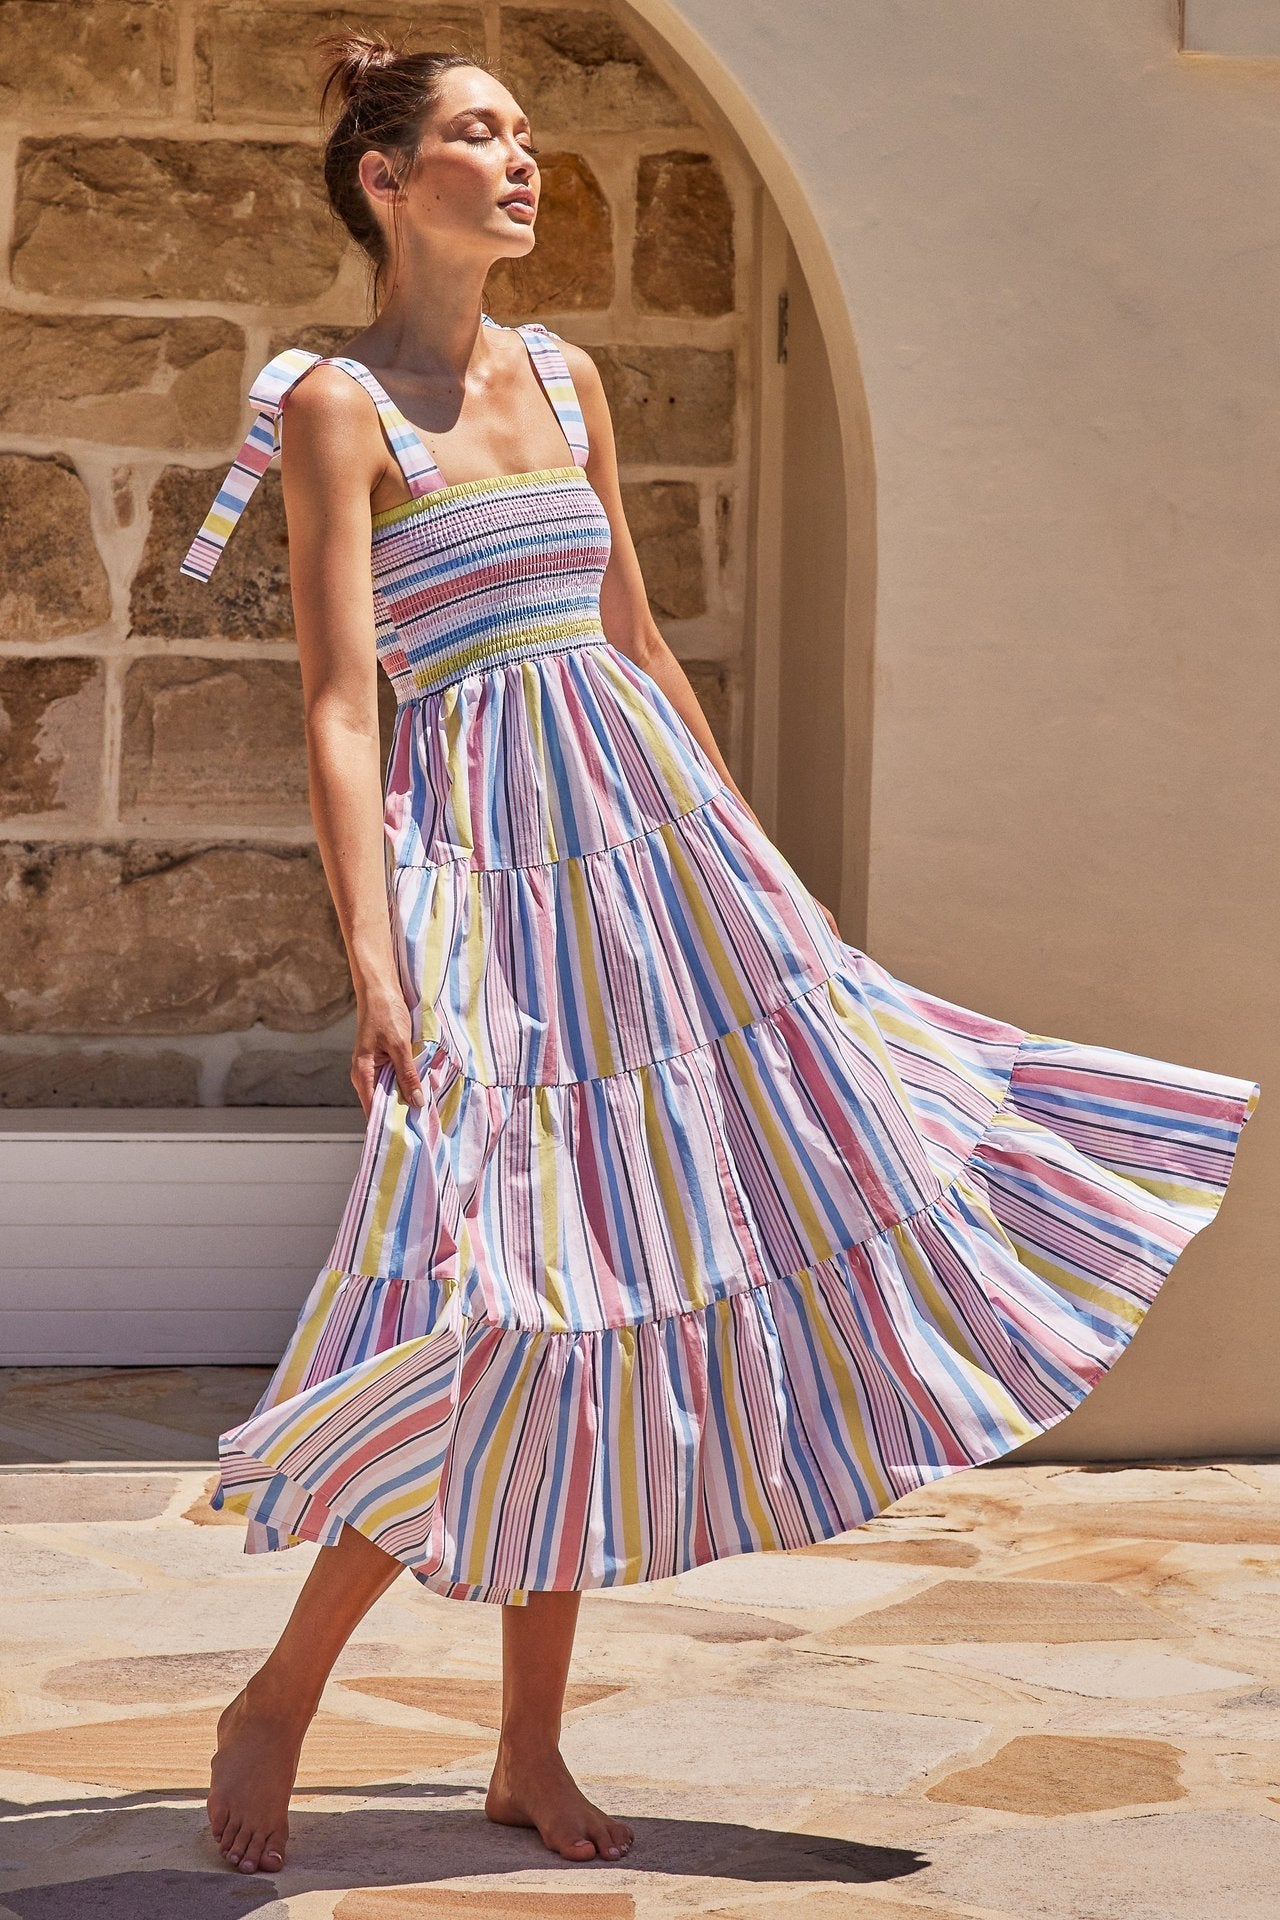 Summer Women's Holiday A-Line Print Dress